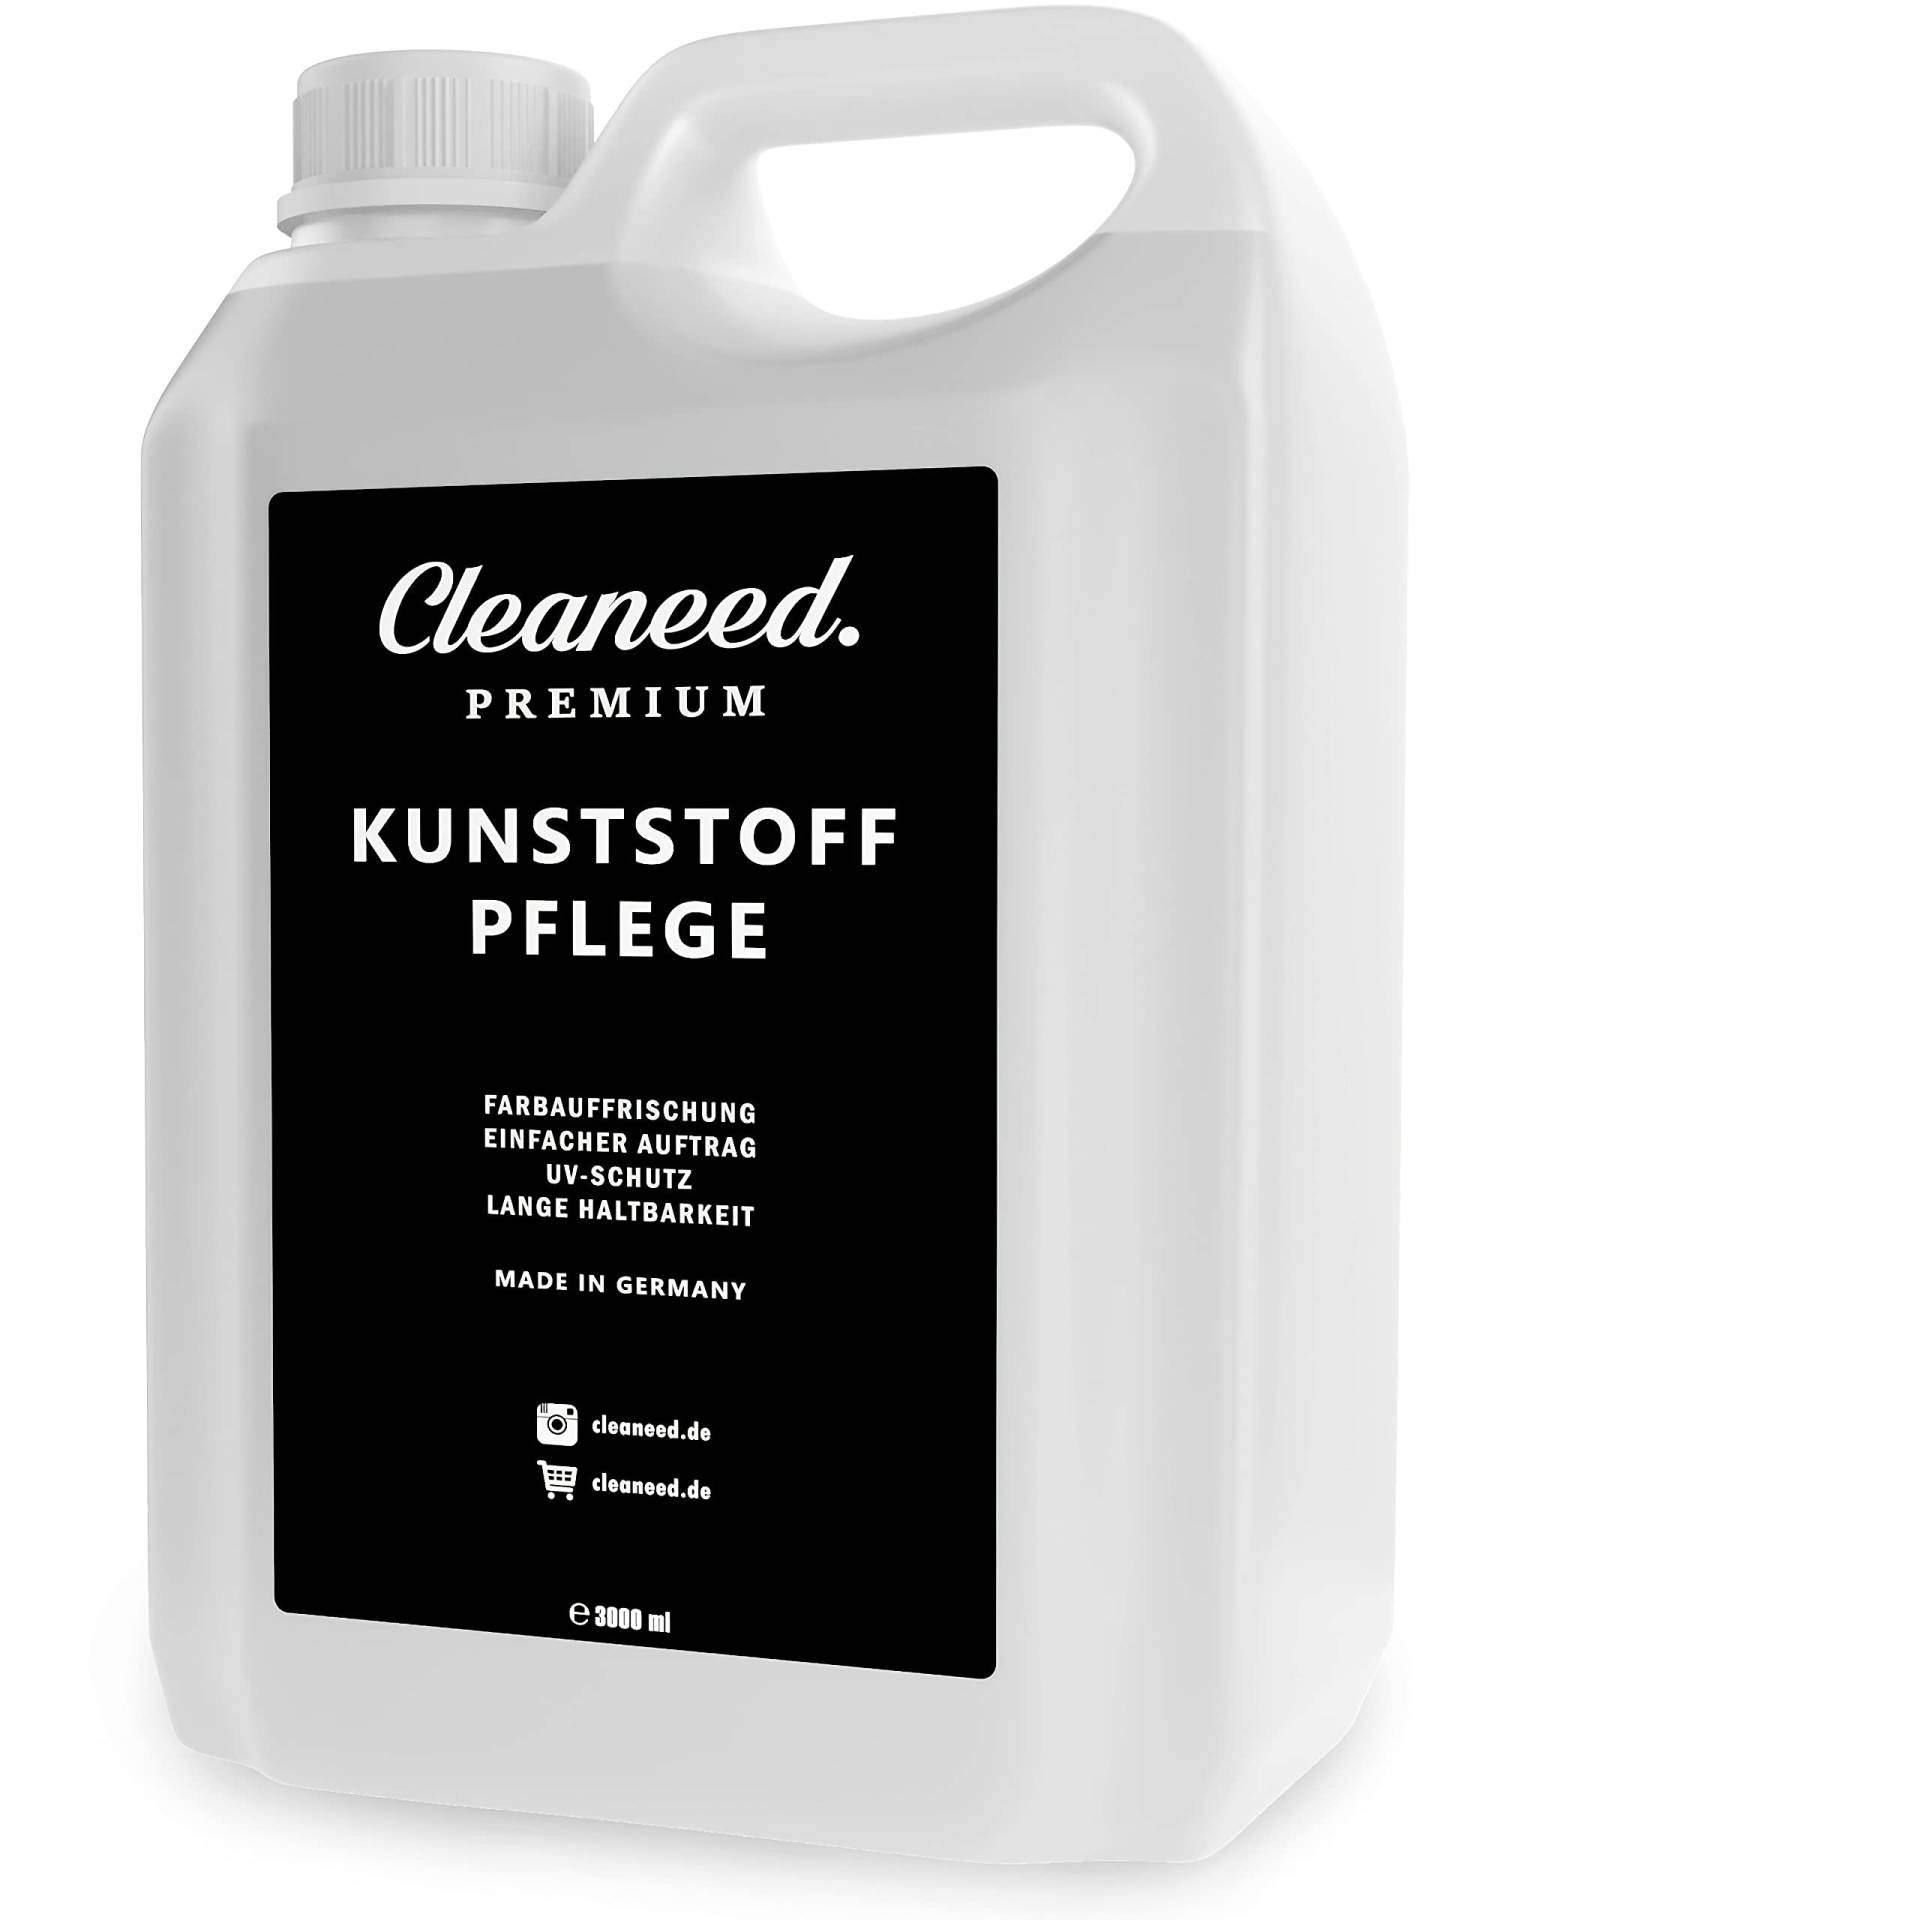 Cleaneed Premium Kunststoffpflege 3L zum Nachfüllen – Made in Germany – Farbauffrischung, UV-Schutz, Lange Haltbarkeit, Einfacher Auftrag, Matt von Cleaneed